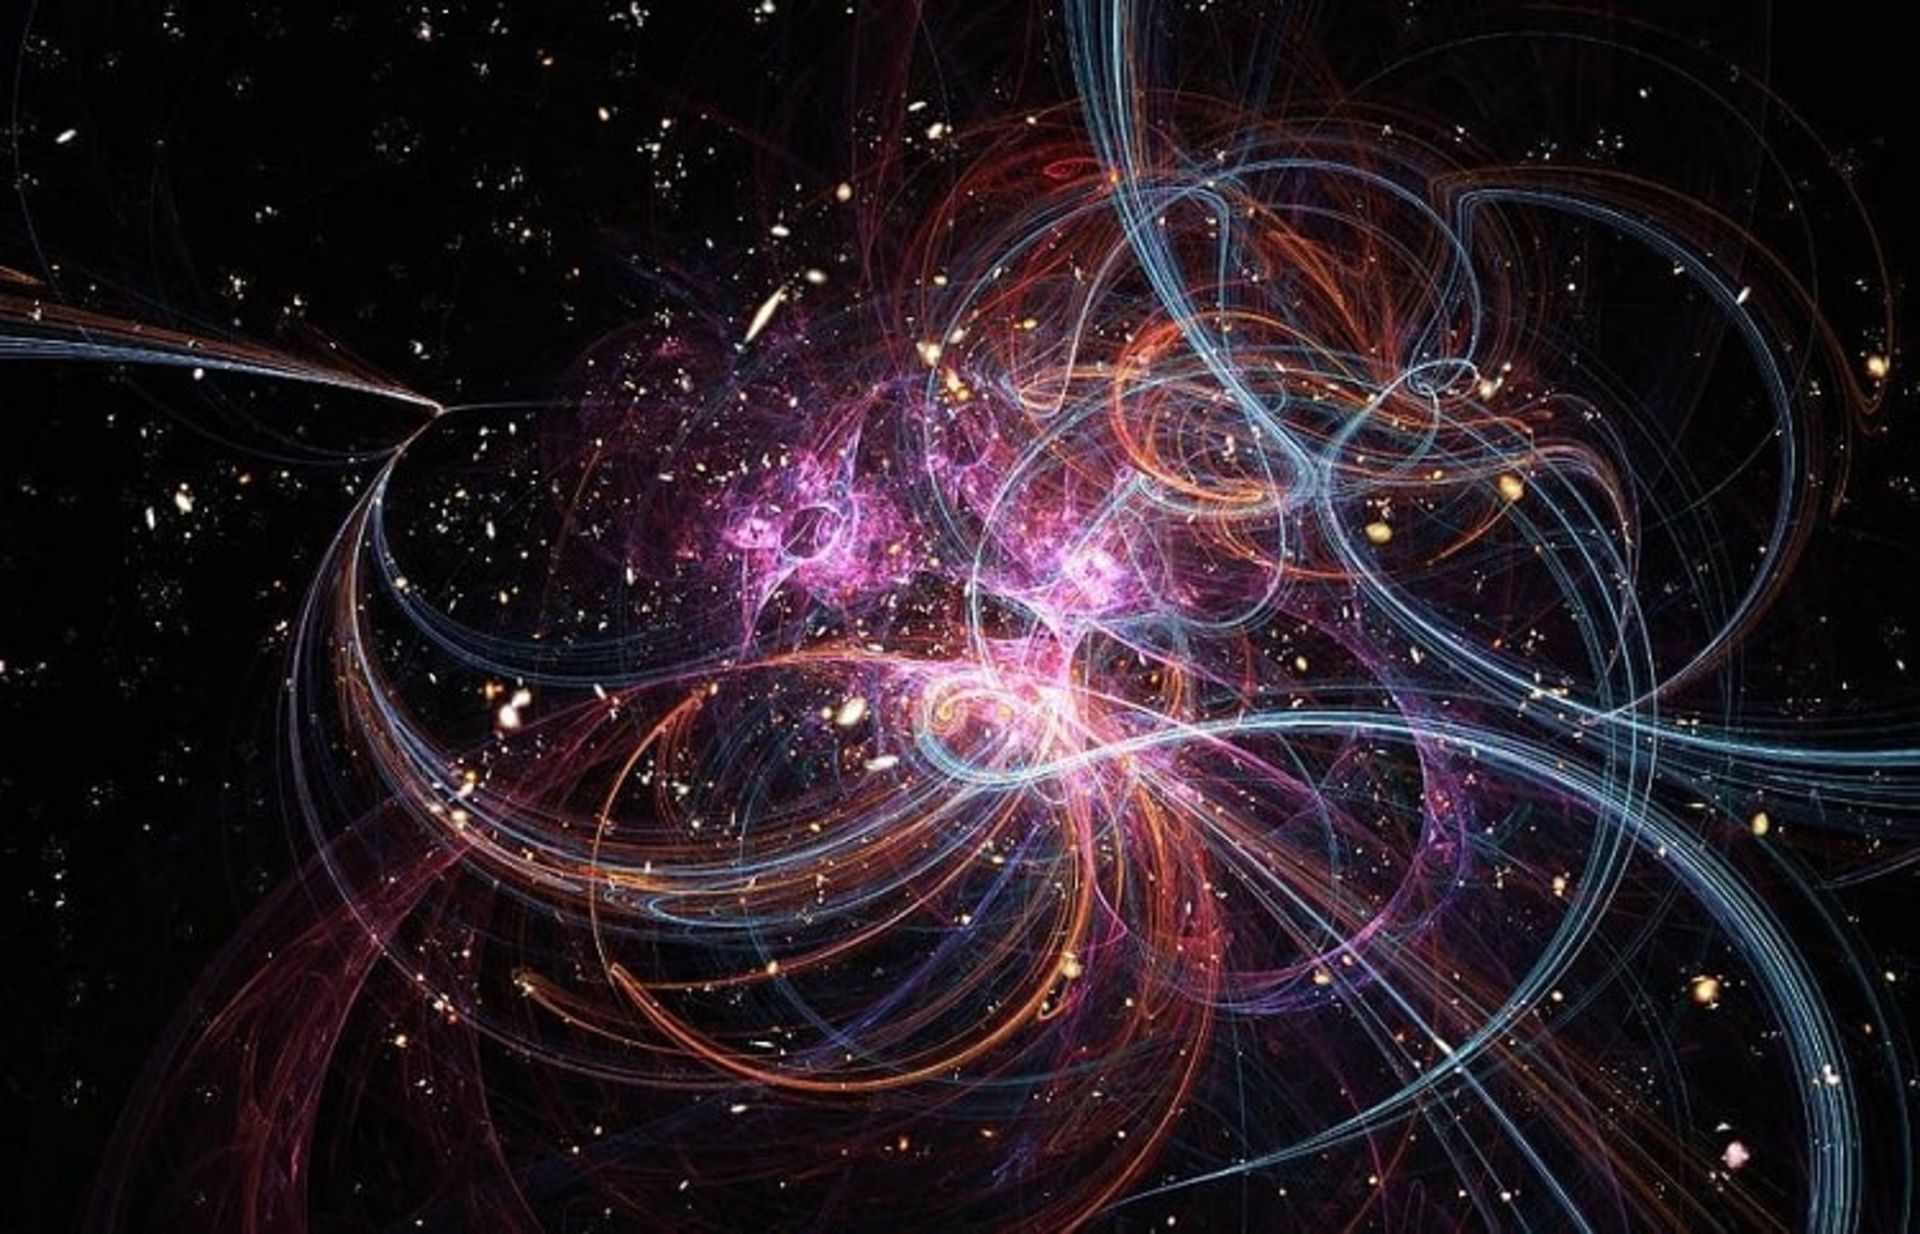 مرجع متخصصين ايران طرح مفهومي از انديشه متخصصينيه ريسمان string theory